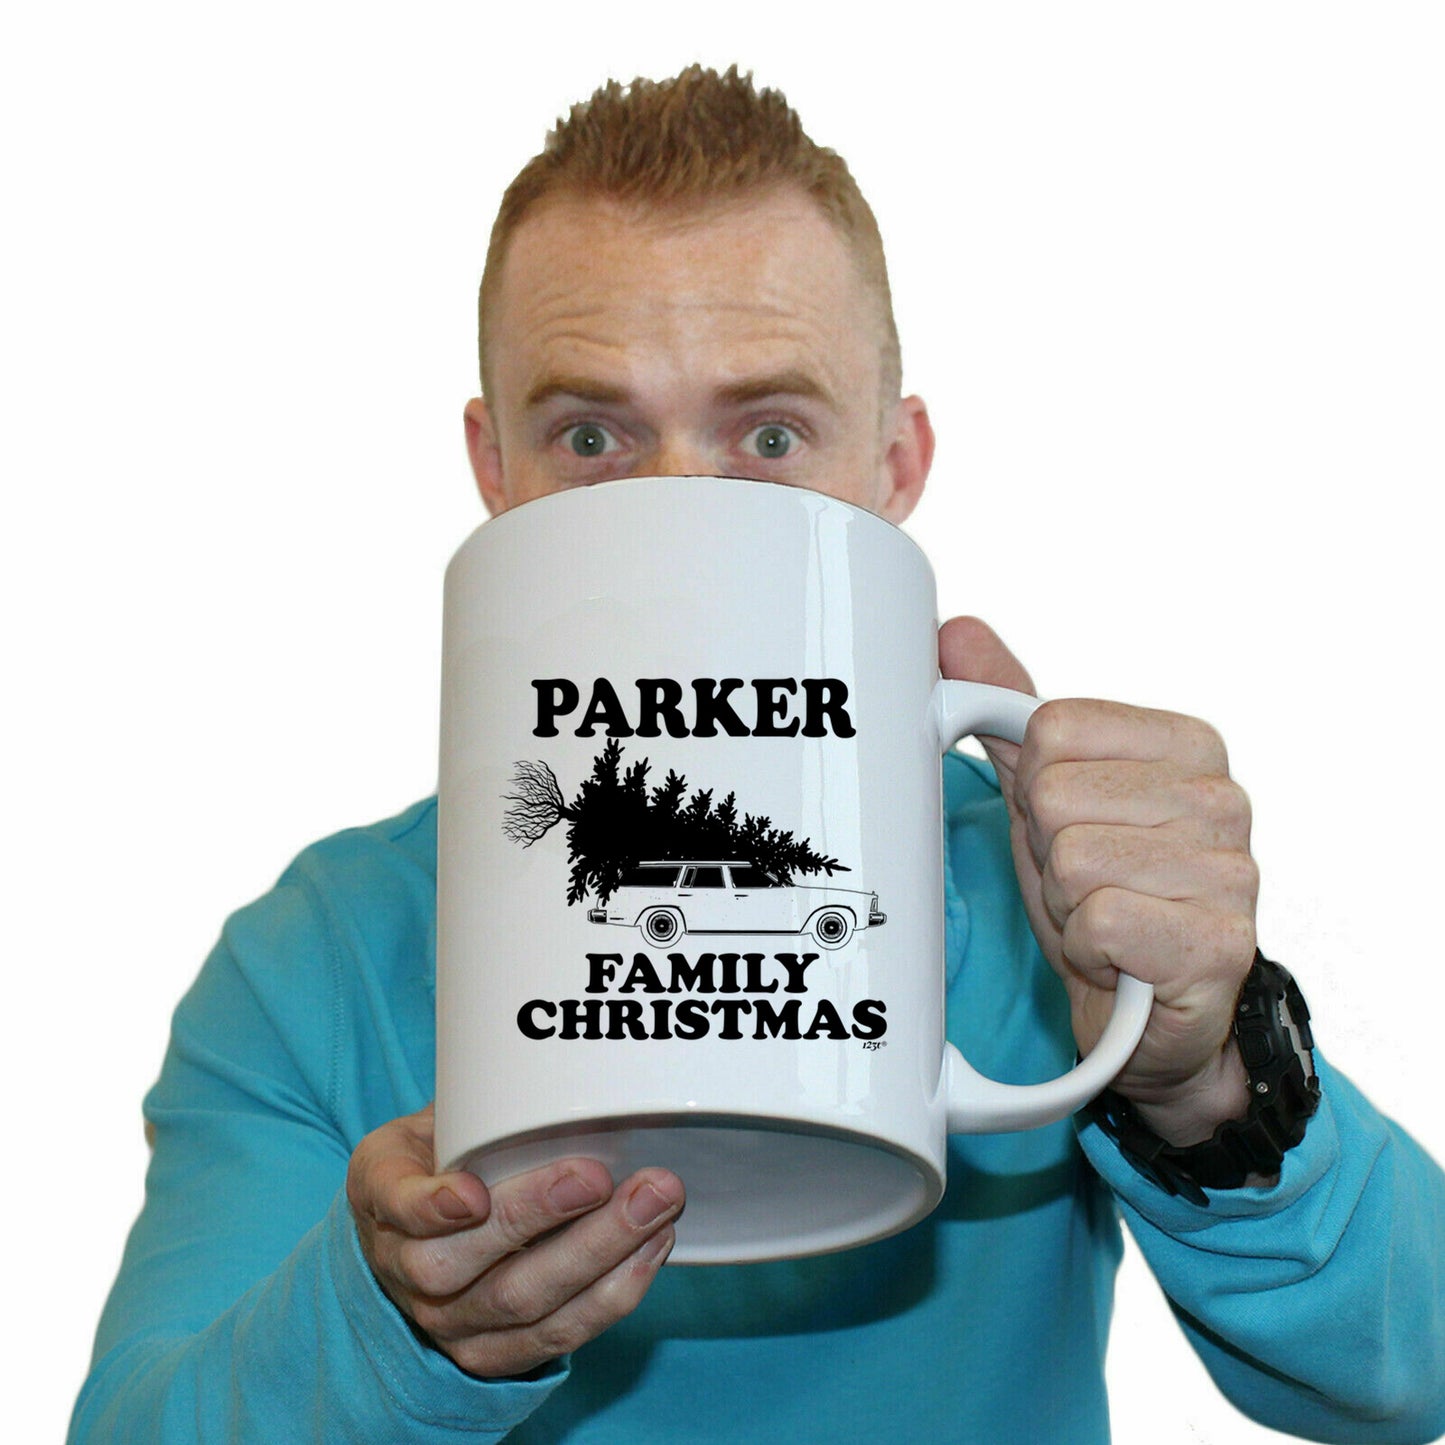 The Christmas Hub - Family Christmas Parker - Funny Giant 2 Litre Mug